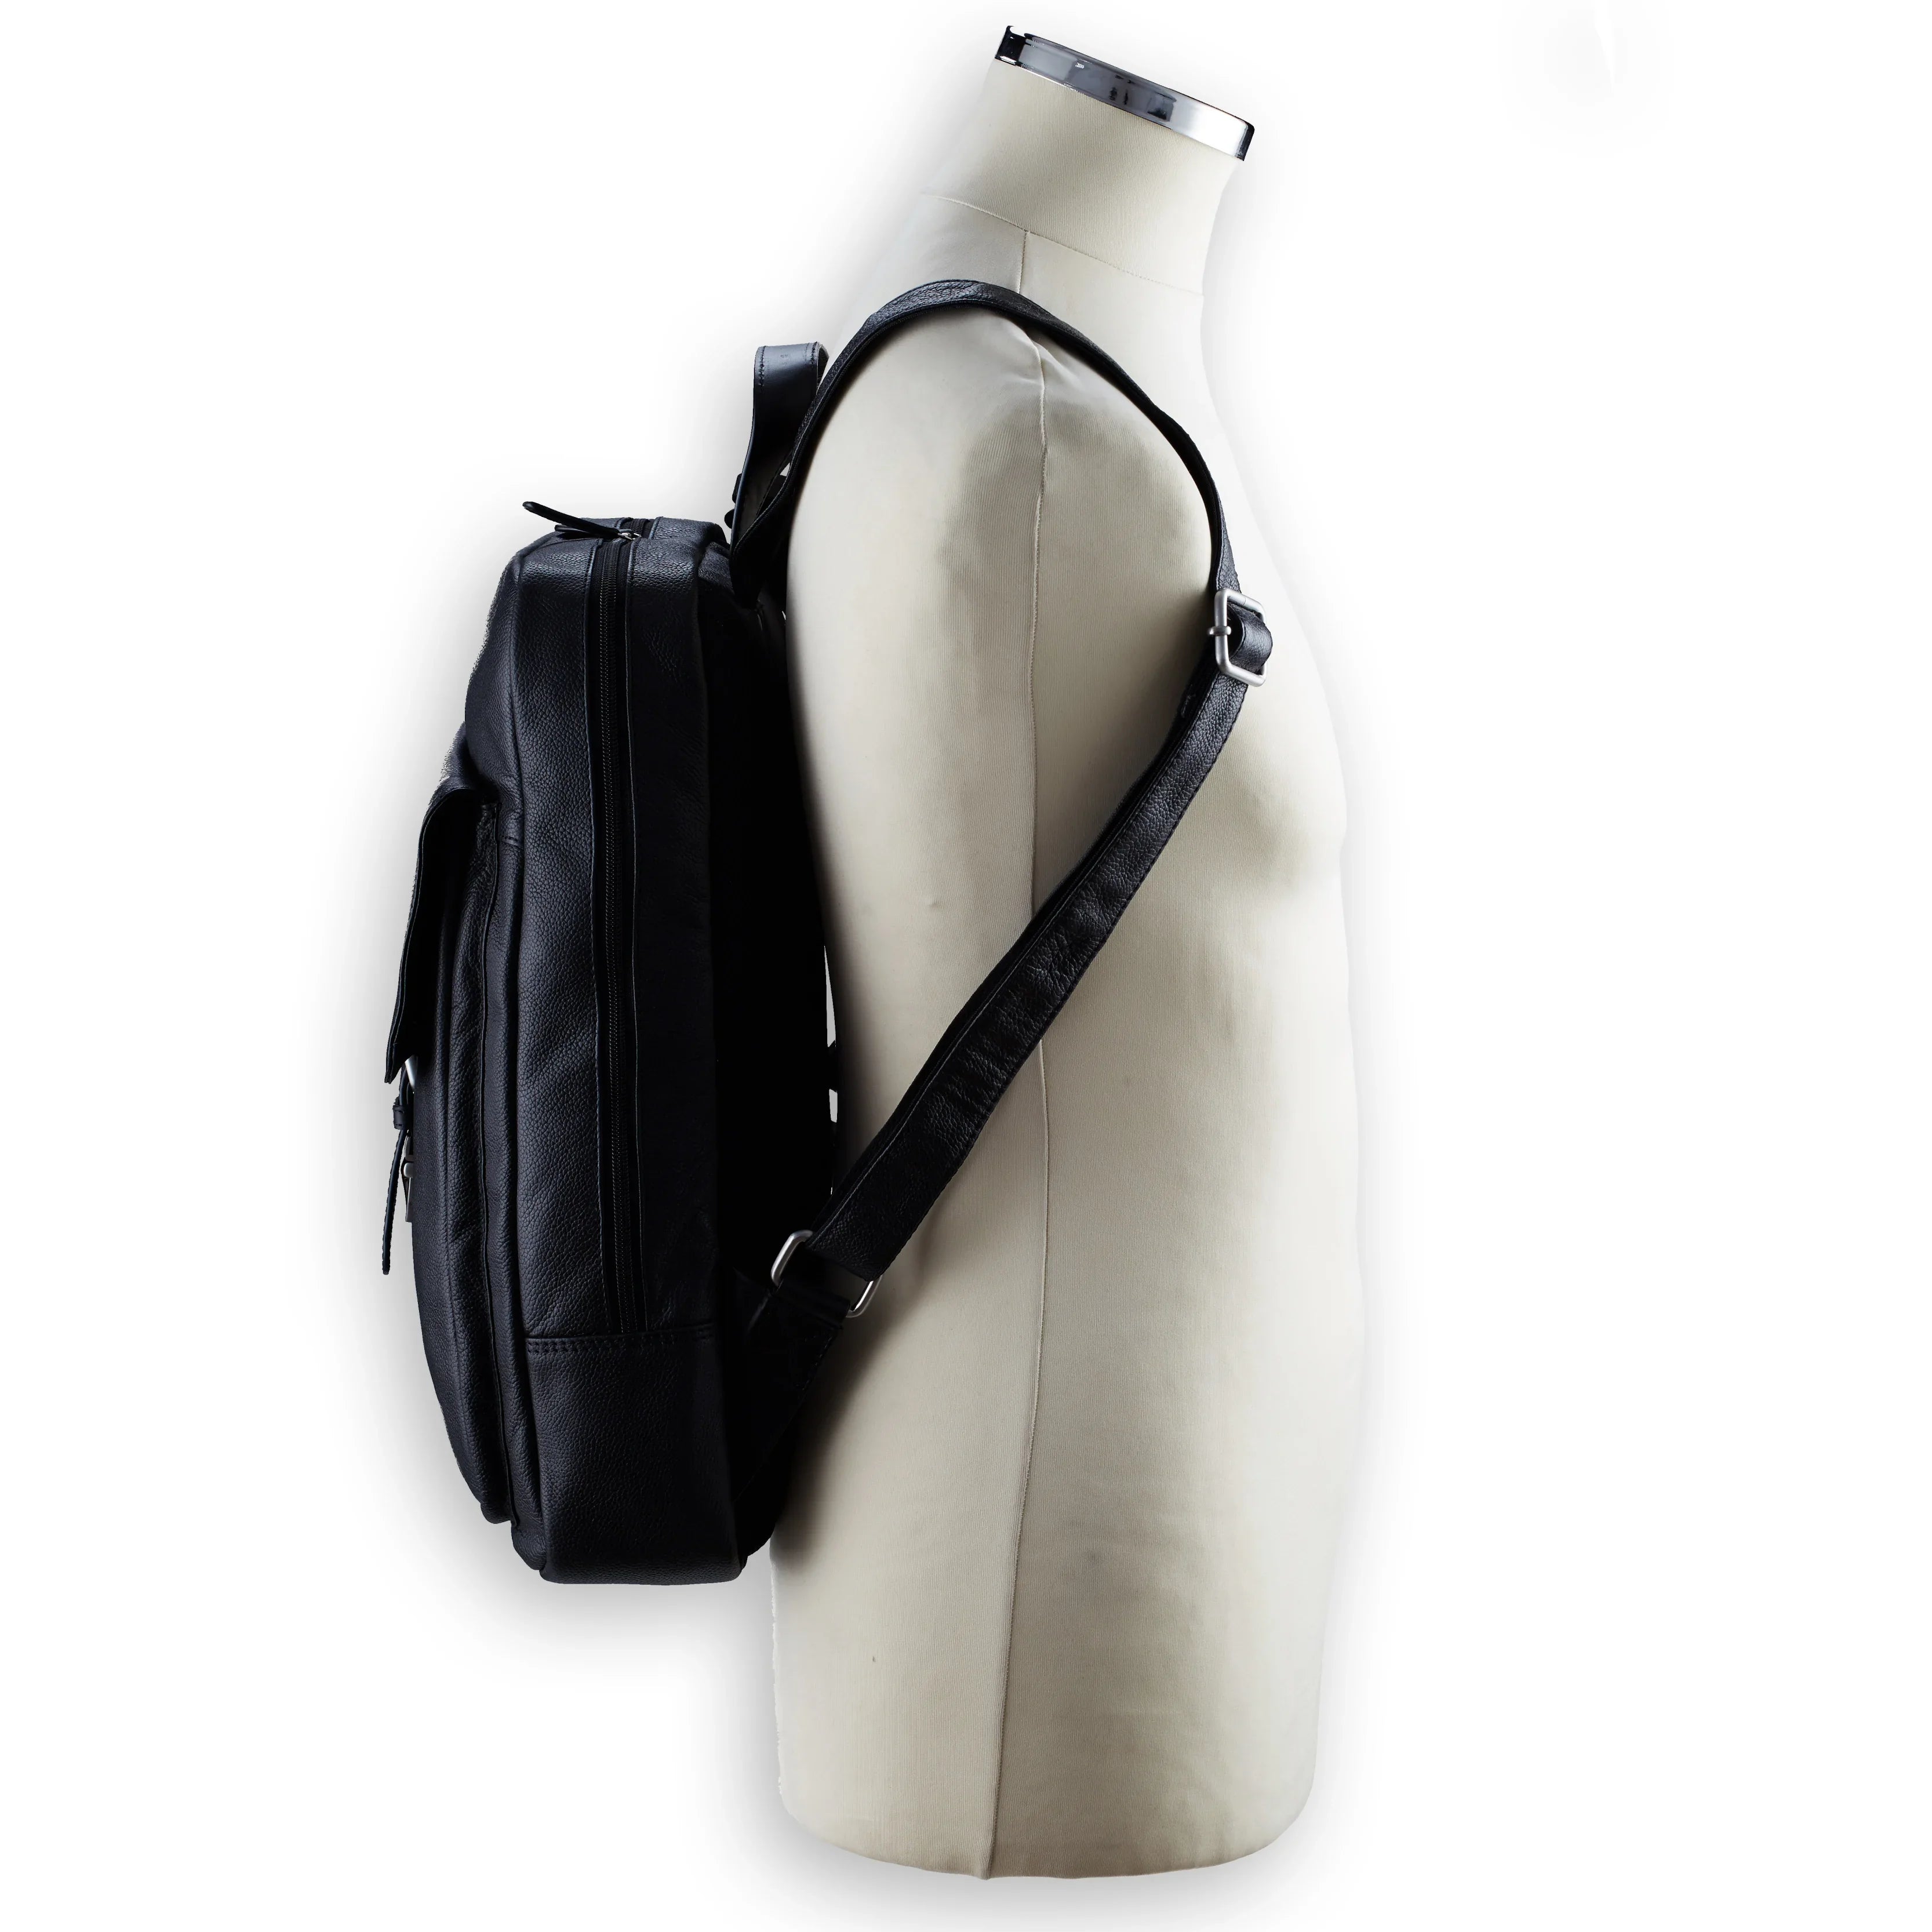 Leonhard Heyden Frankfurt laptop backpack 41 cm - black